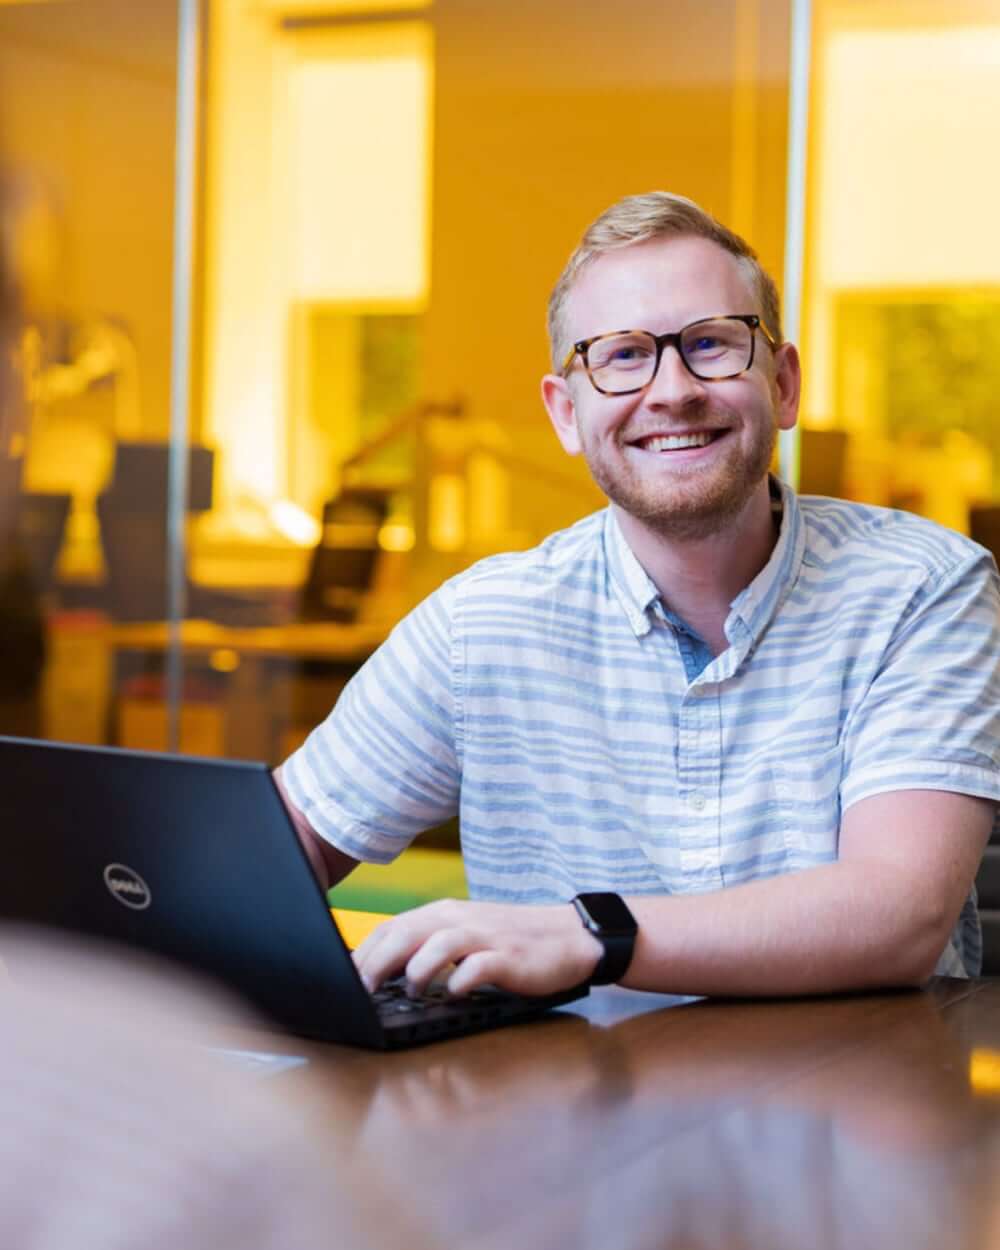 Man on laptop smiling